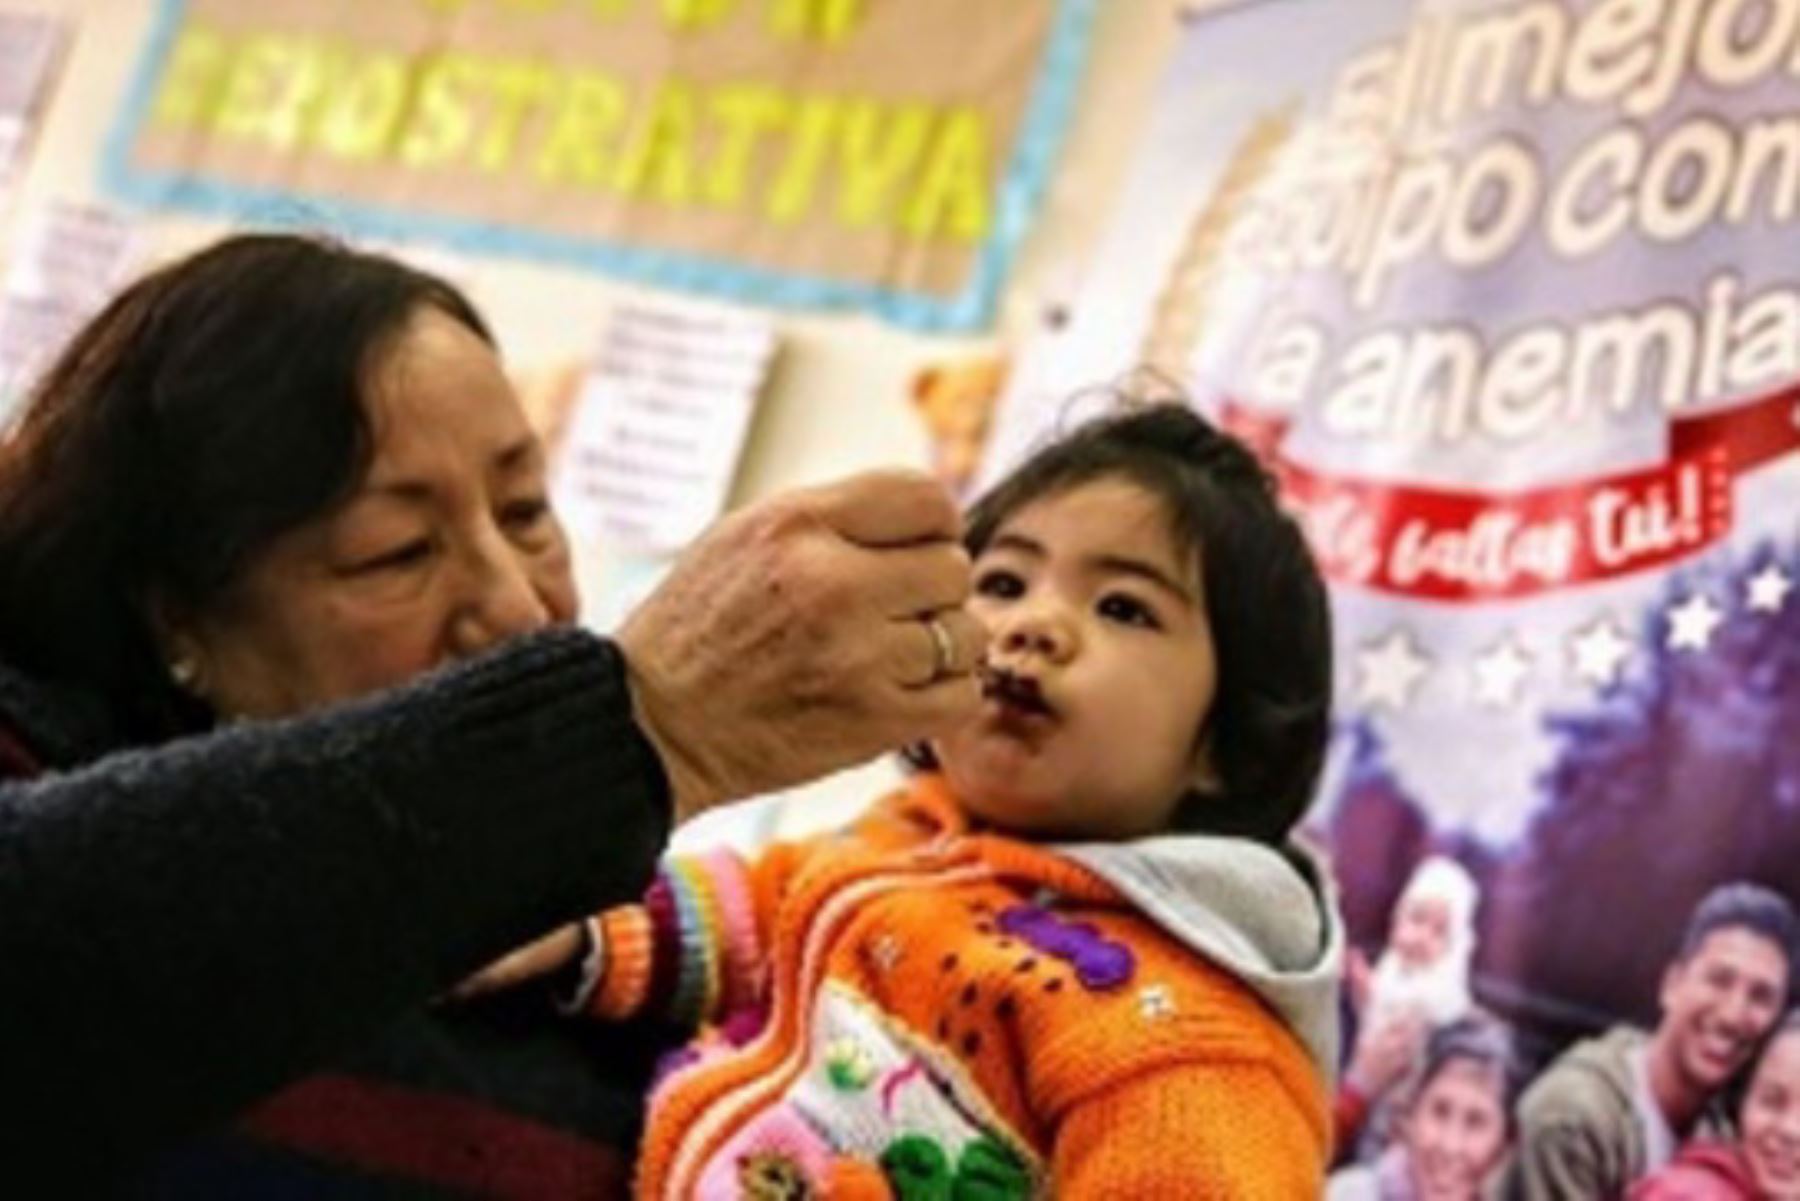 Las regiones de Pasco, Amazonas, San Martín e Ica son las que lideran la reducción de la anemia infantil en Perú en los últimos doce meses, superando con creces el promedio nacional. ANDINA/Difusión